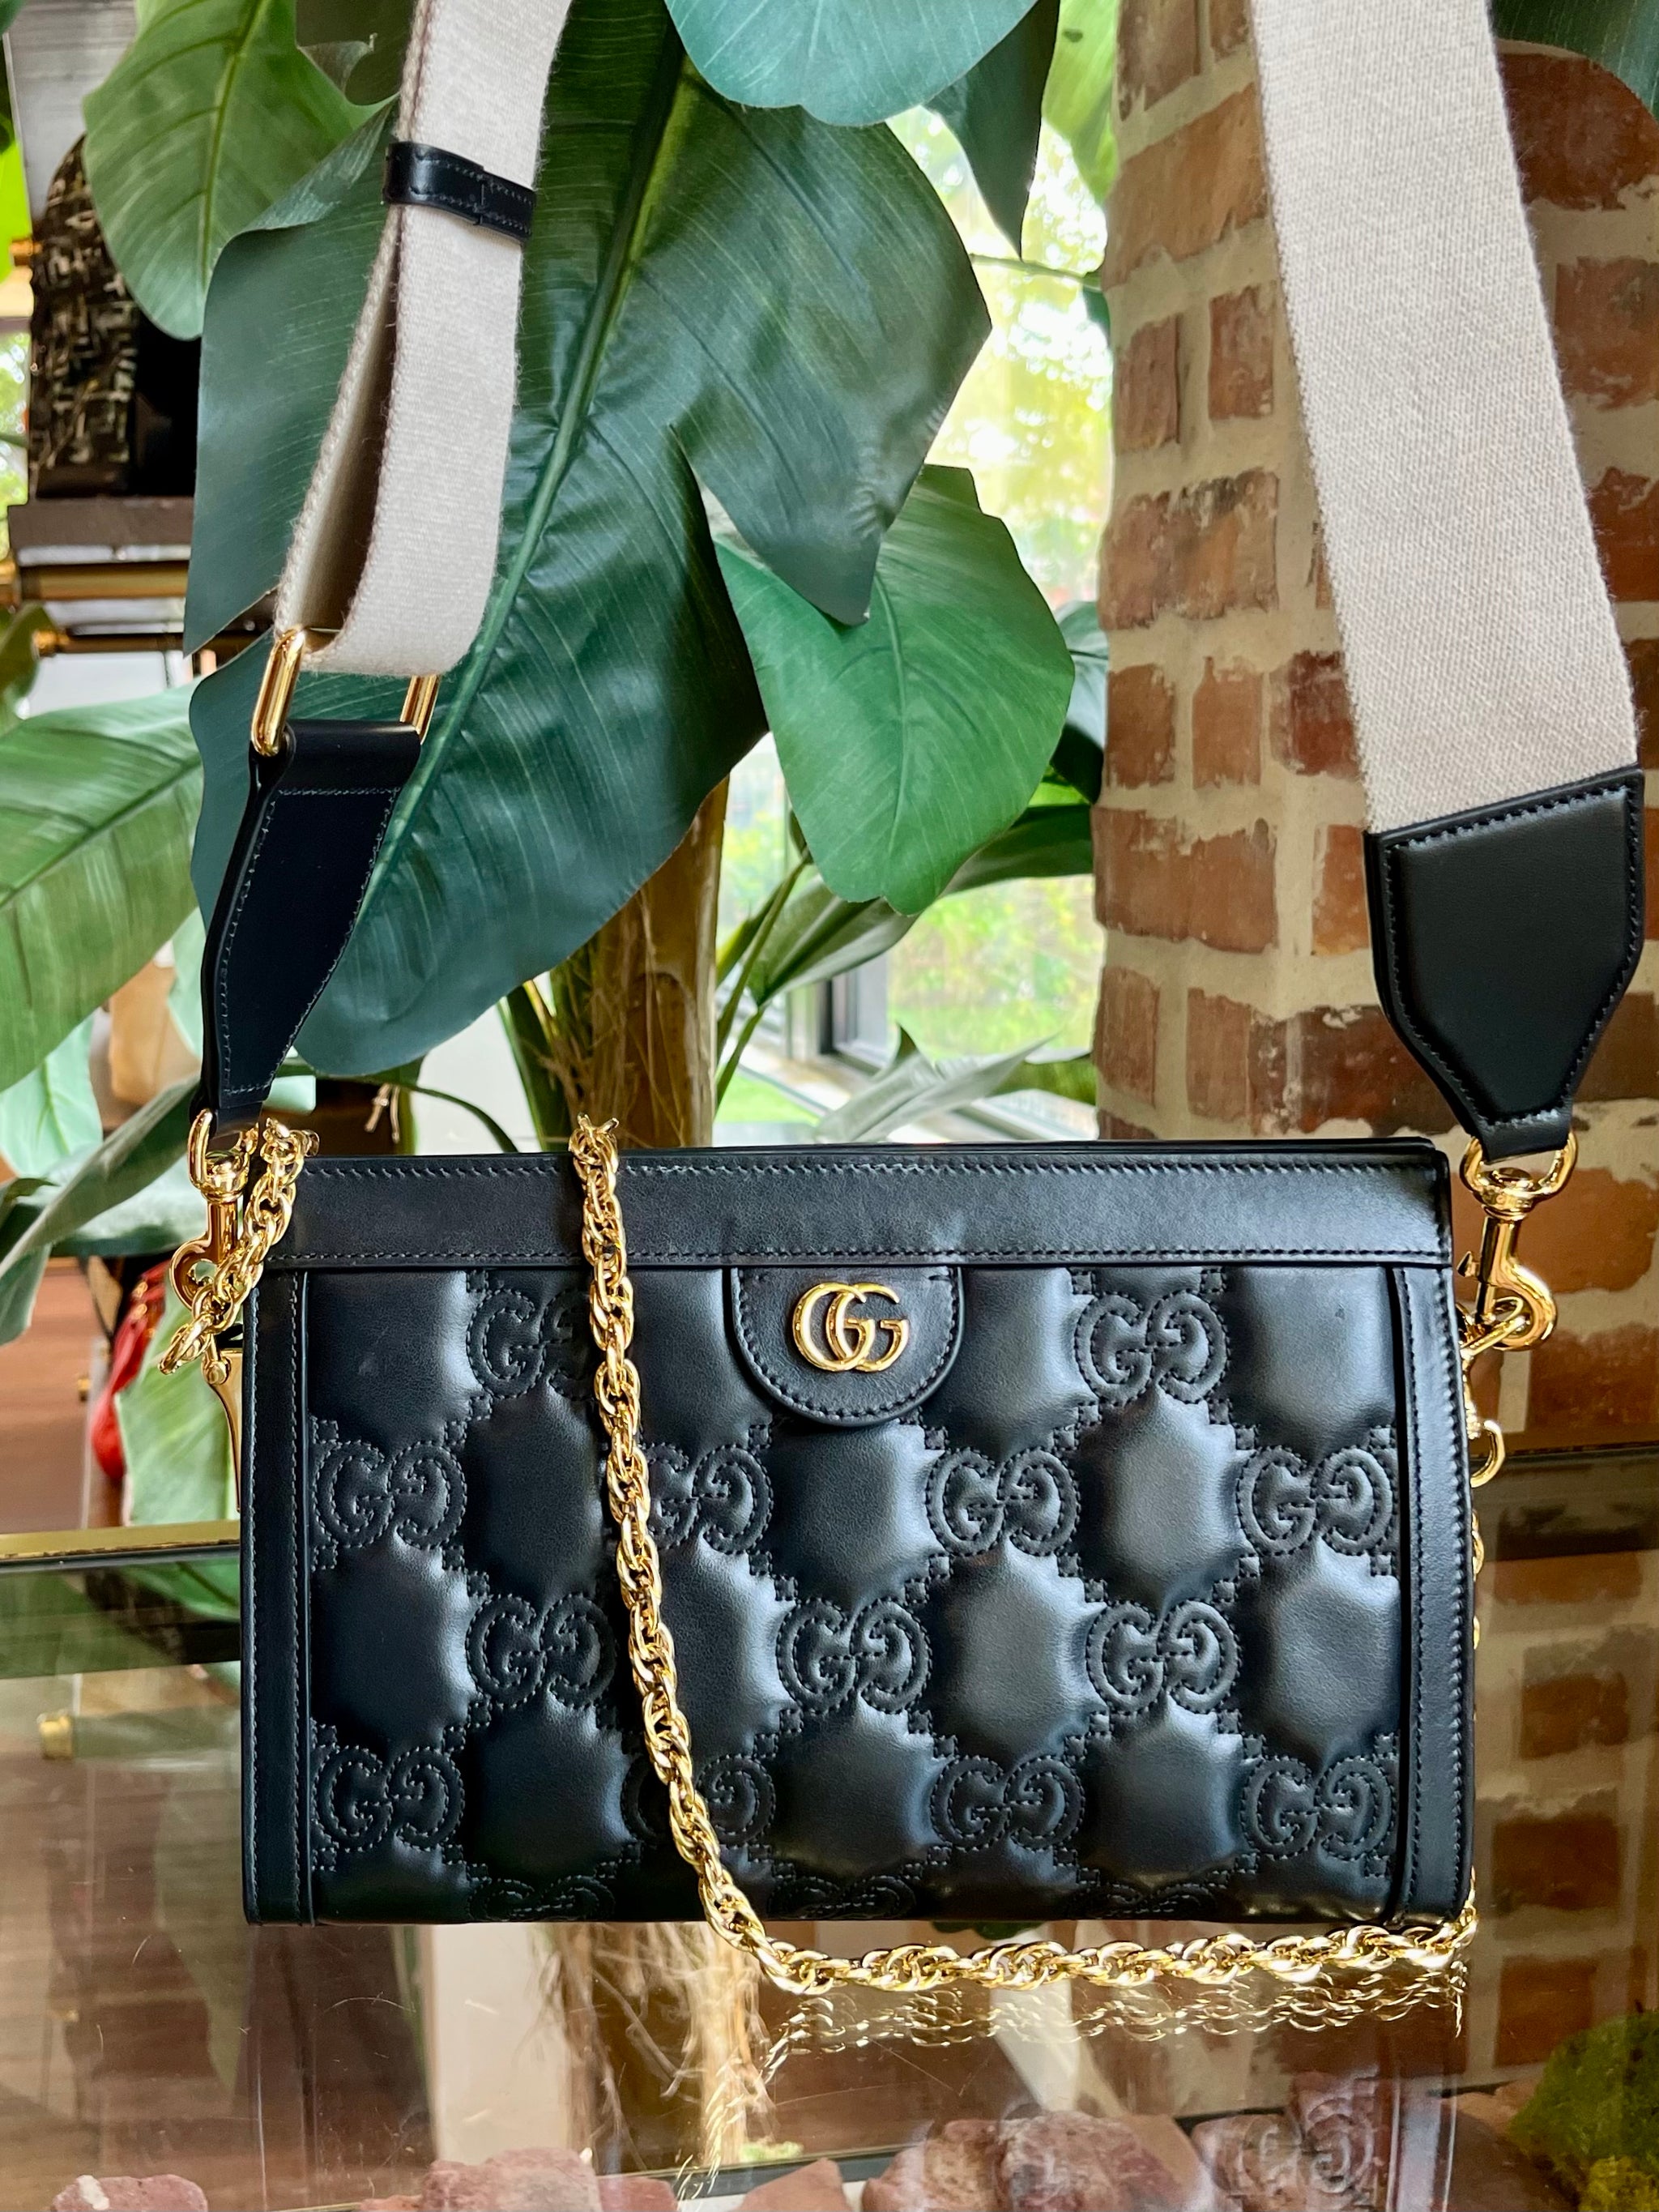 Gucci bag( 2 color options)